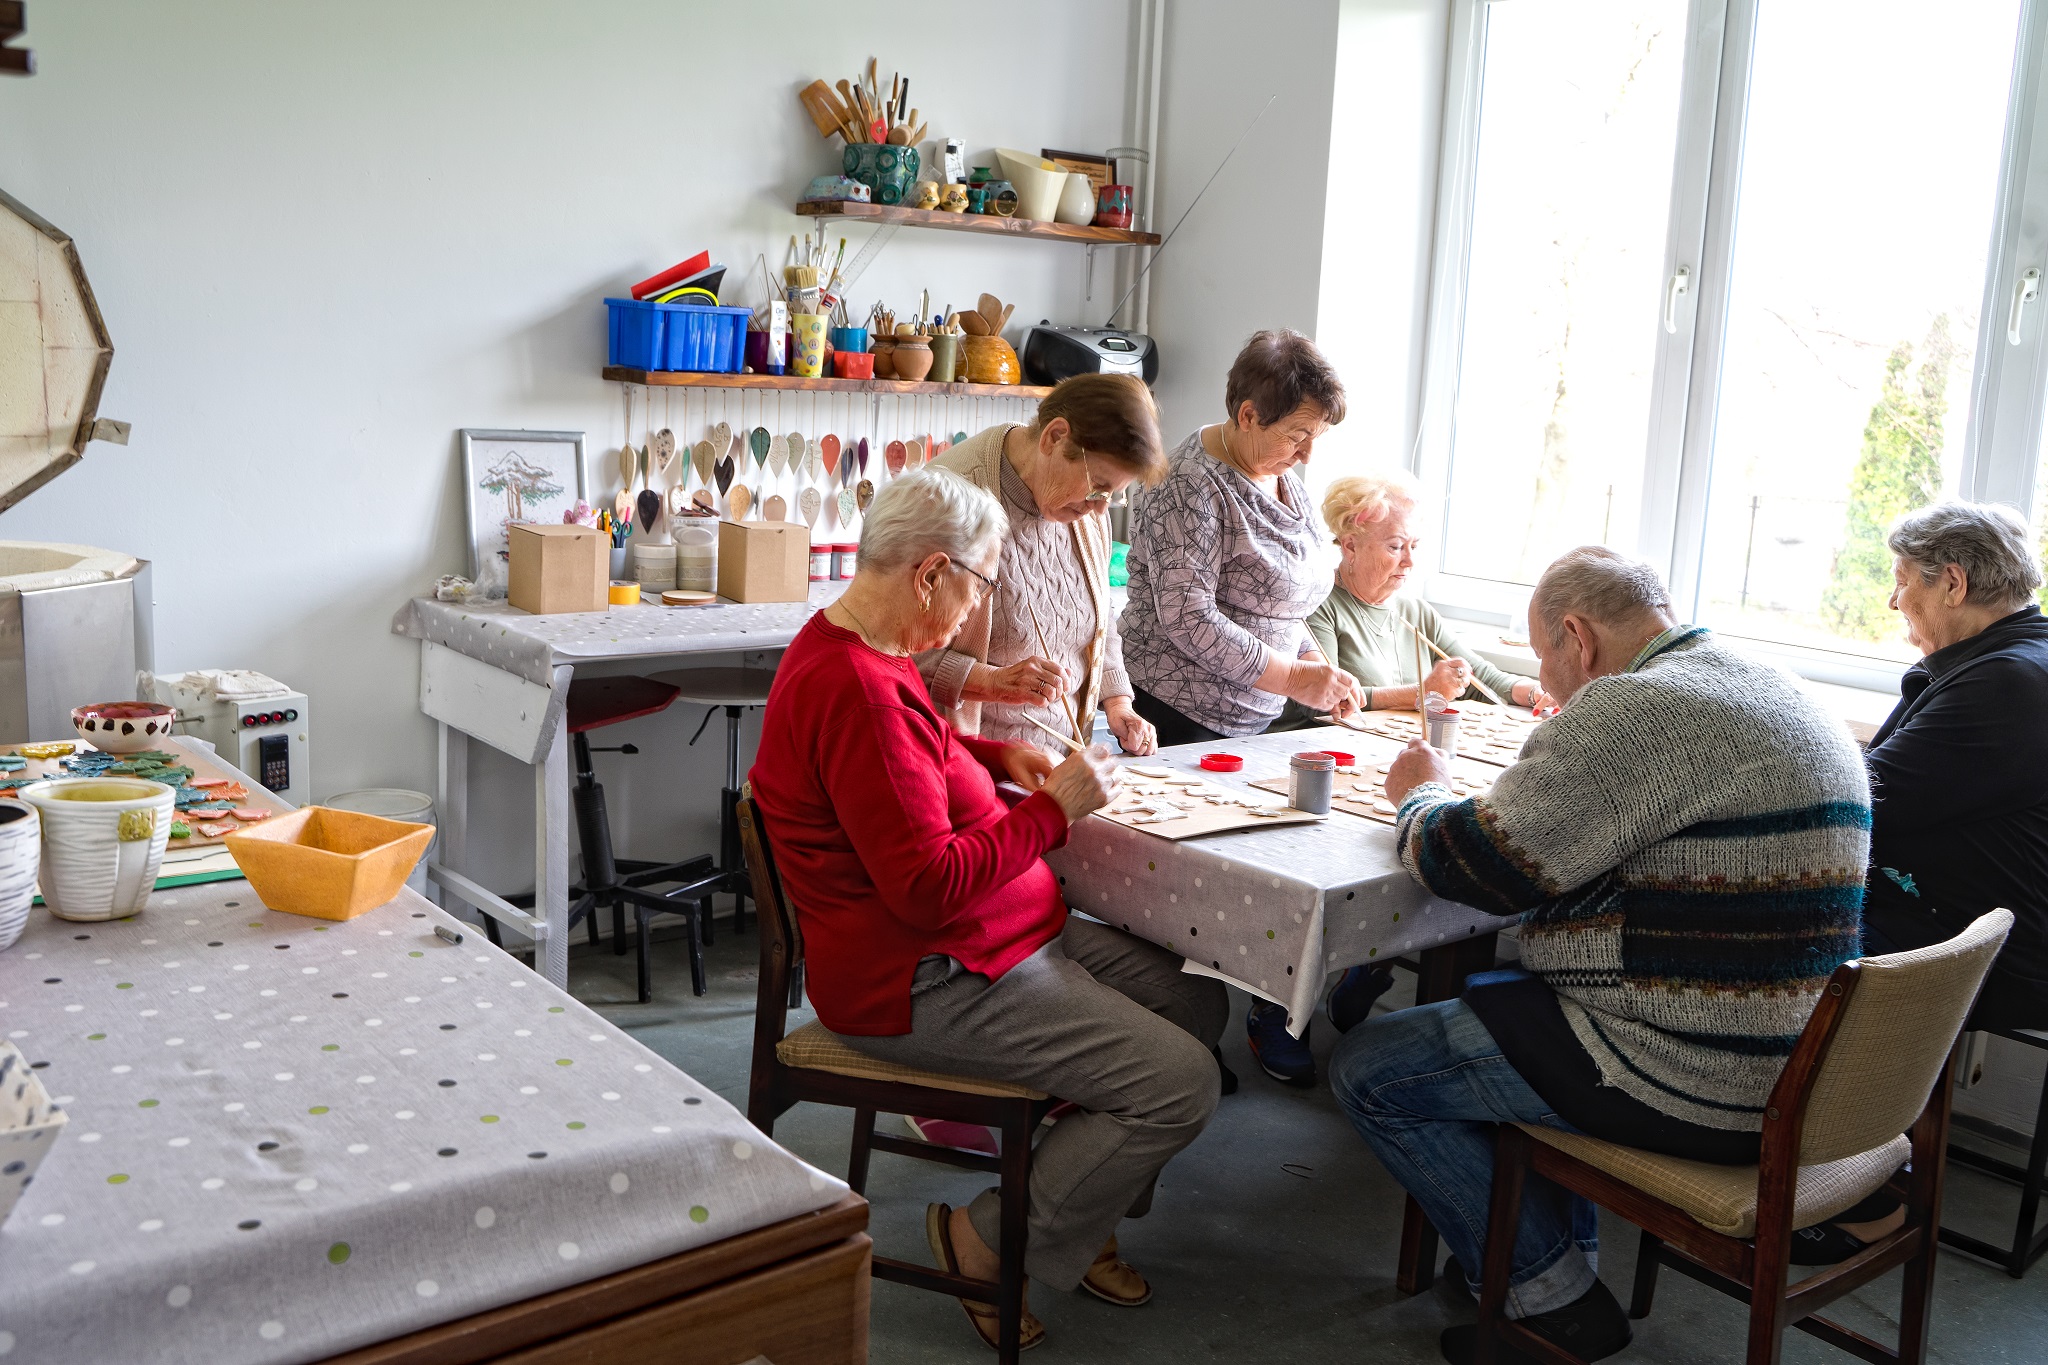 Na zdjęciu przedstawione wnętrze pracowni ceramicznej, seniorzy siedzący przy stole wykonujący ozdoby ceramiczne.